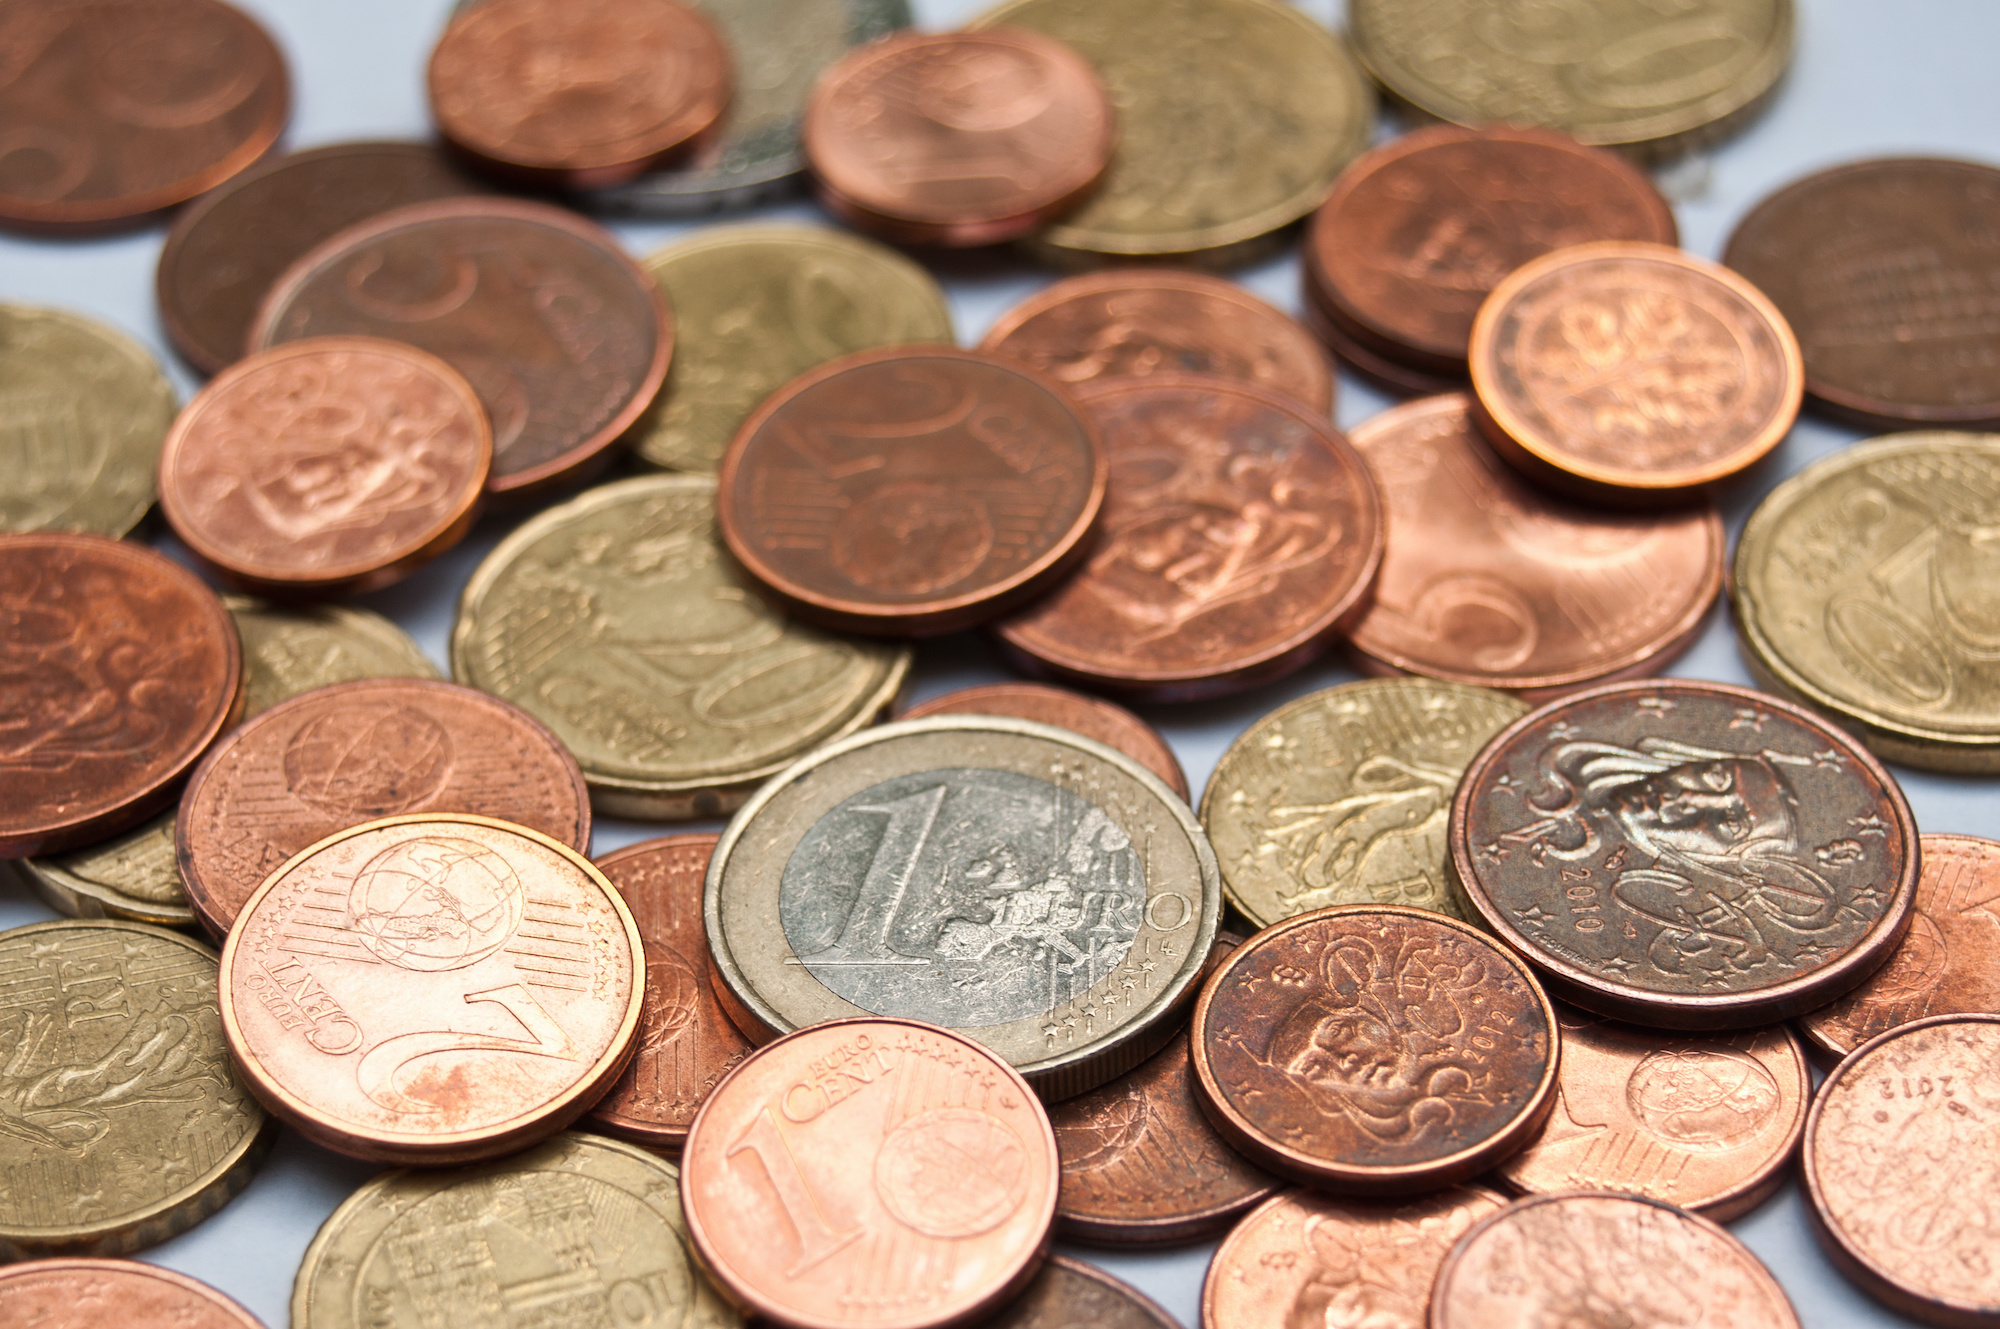 Les pièces de monnaie en euro, qui contiennent du cuivre, sont bien moins contaminées que les billets en fibre de coton. © pixarno, Adobe Stock